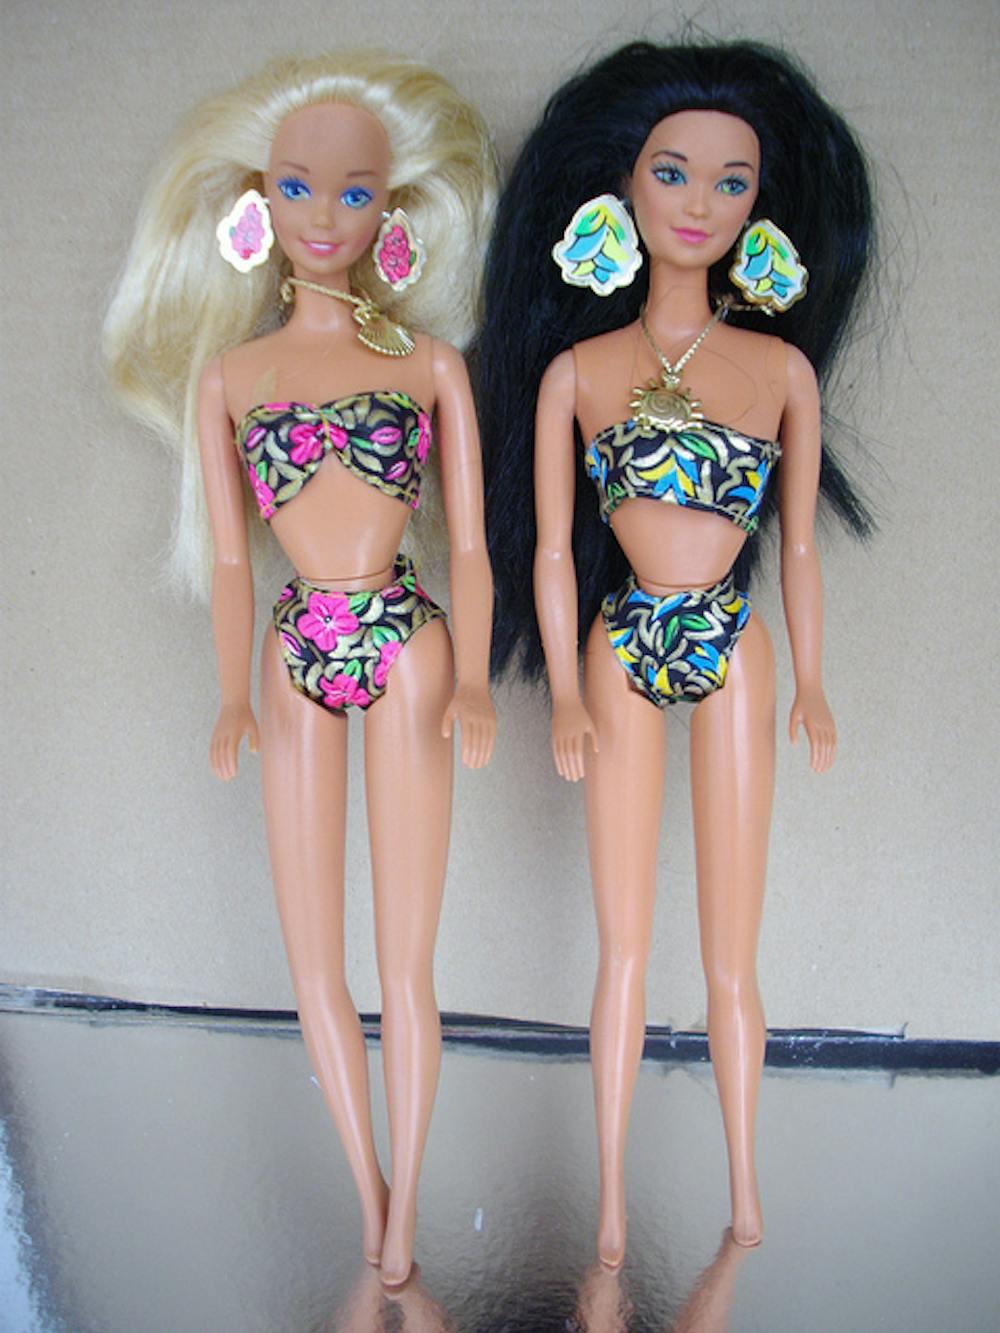 zo veel verdund Ik zie je morgen Is Barbie bad for body image?